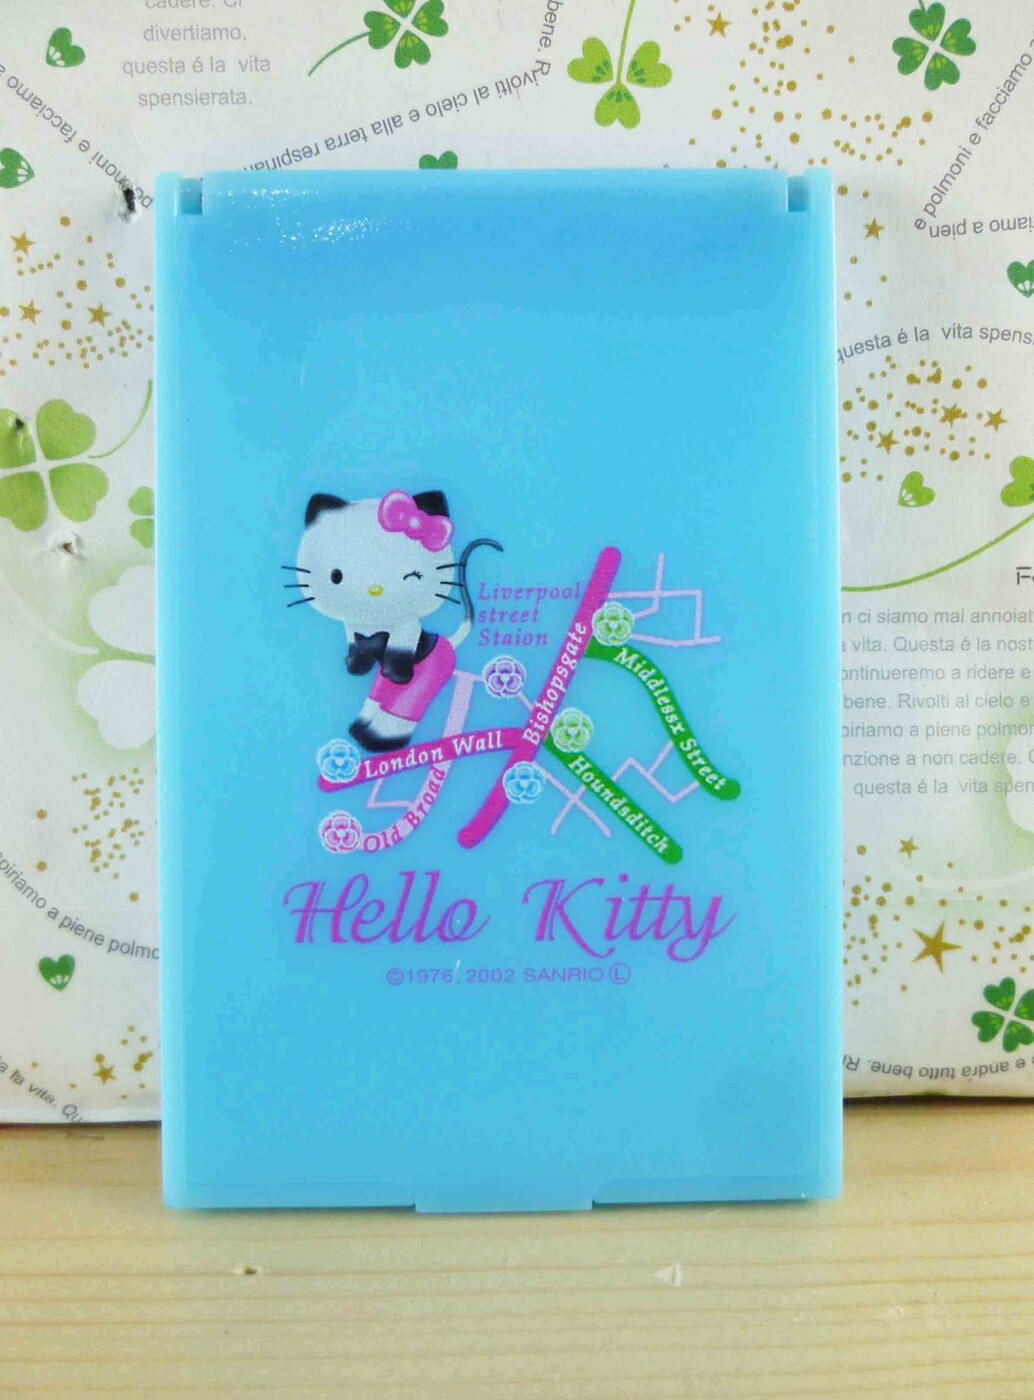 【震撼精品百貨】Hello Kitty 凱蒂貓-摺疊鏡-藍貓咪 震撼日式精品百貨